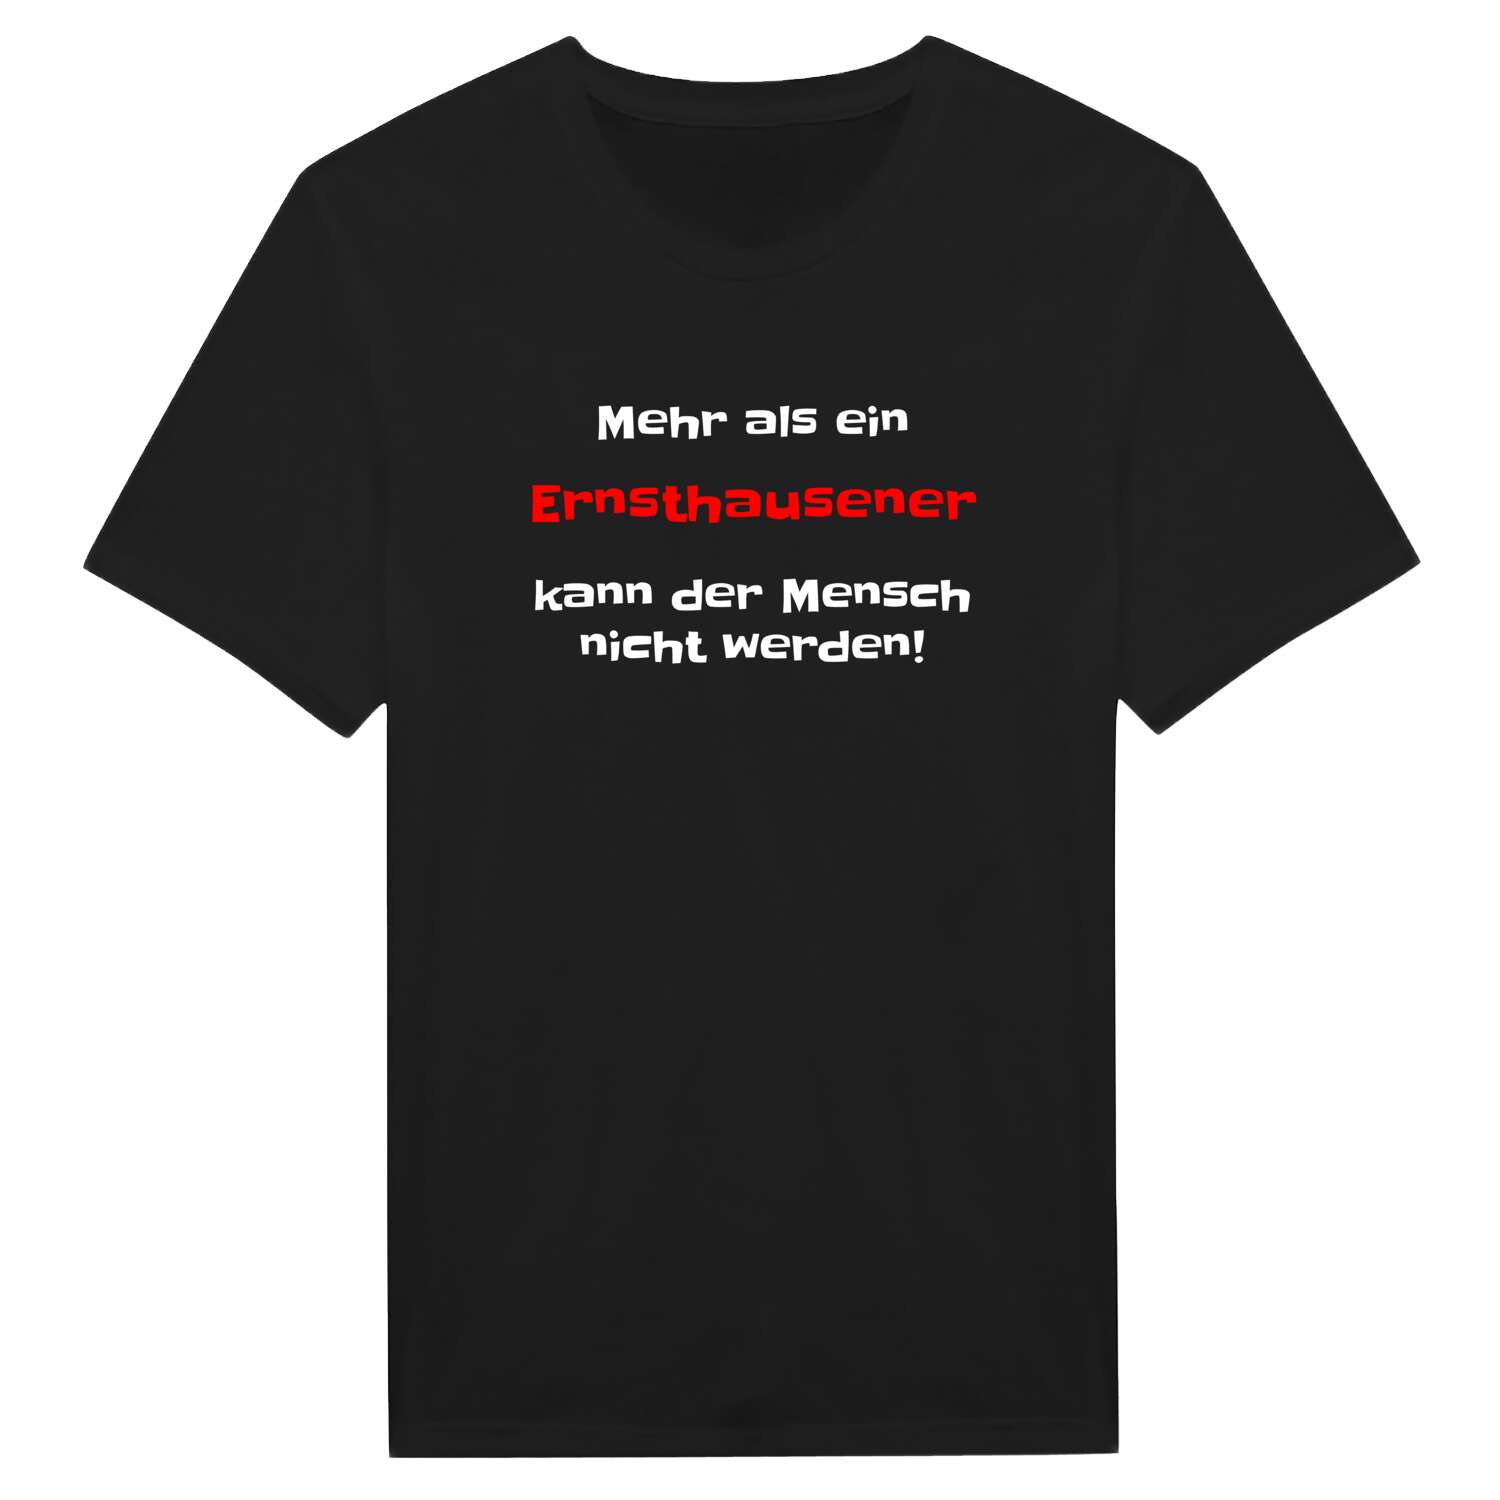 Ernsthausen T-Shirt »Mehr als ein«